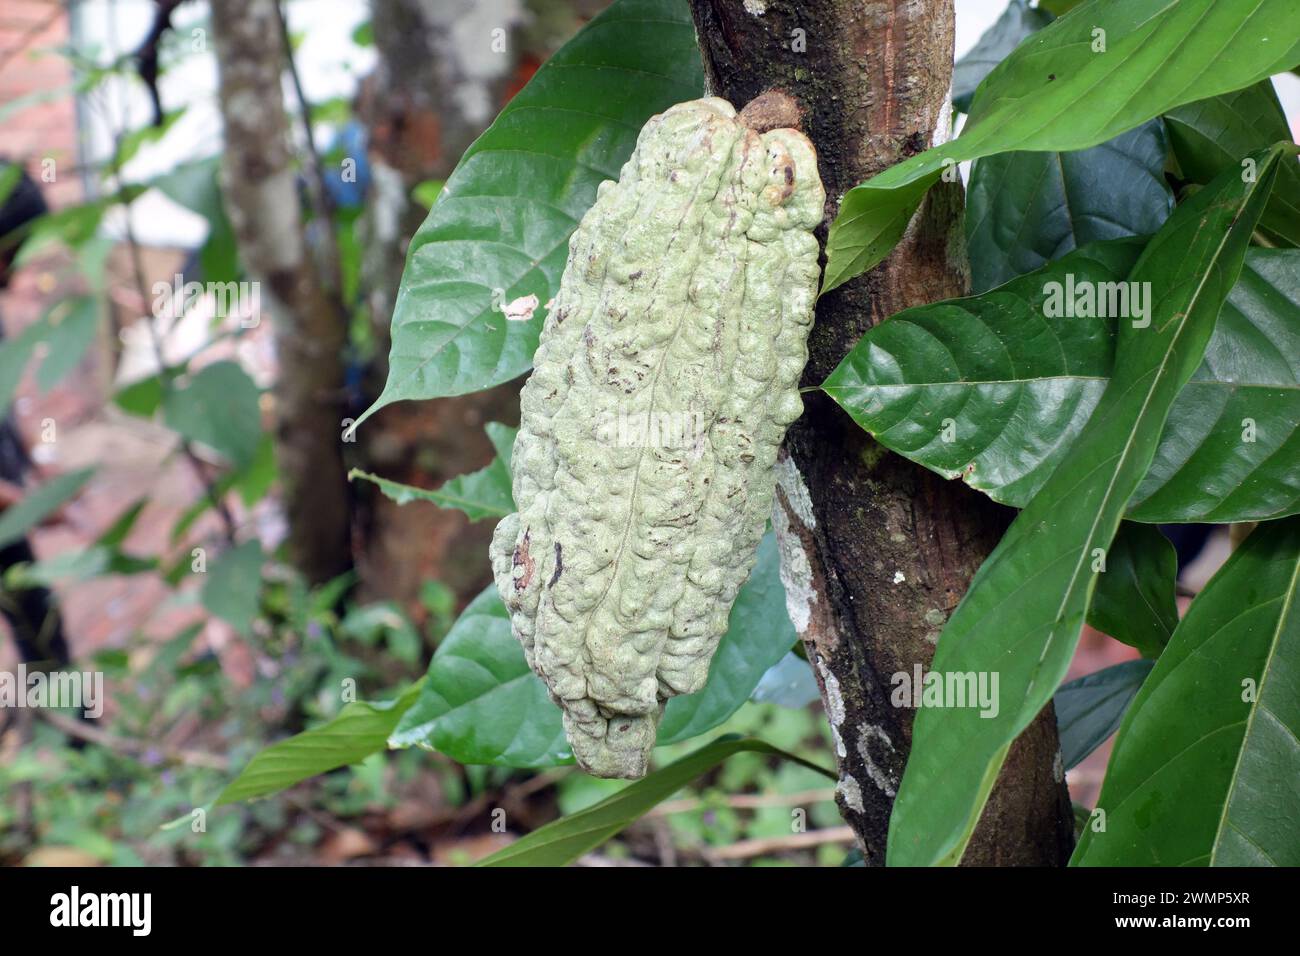 Cocoa Pod growing on a tree near Munnar, Kerala, India Stock Photo